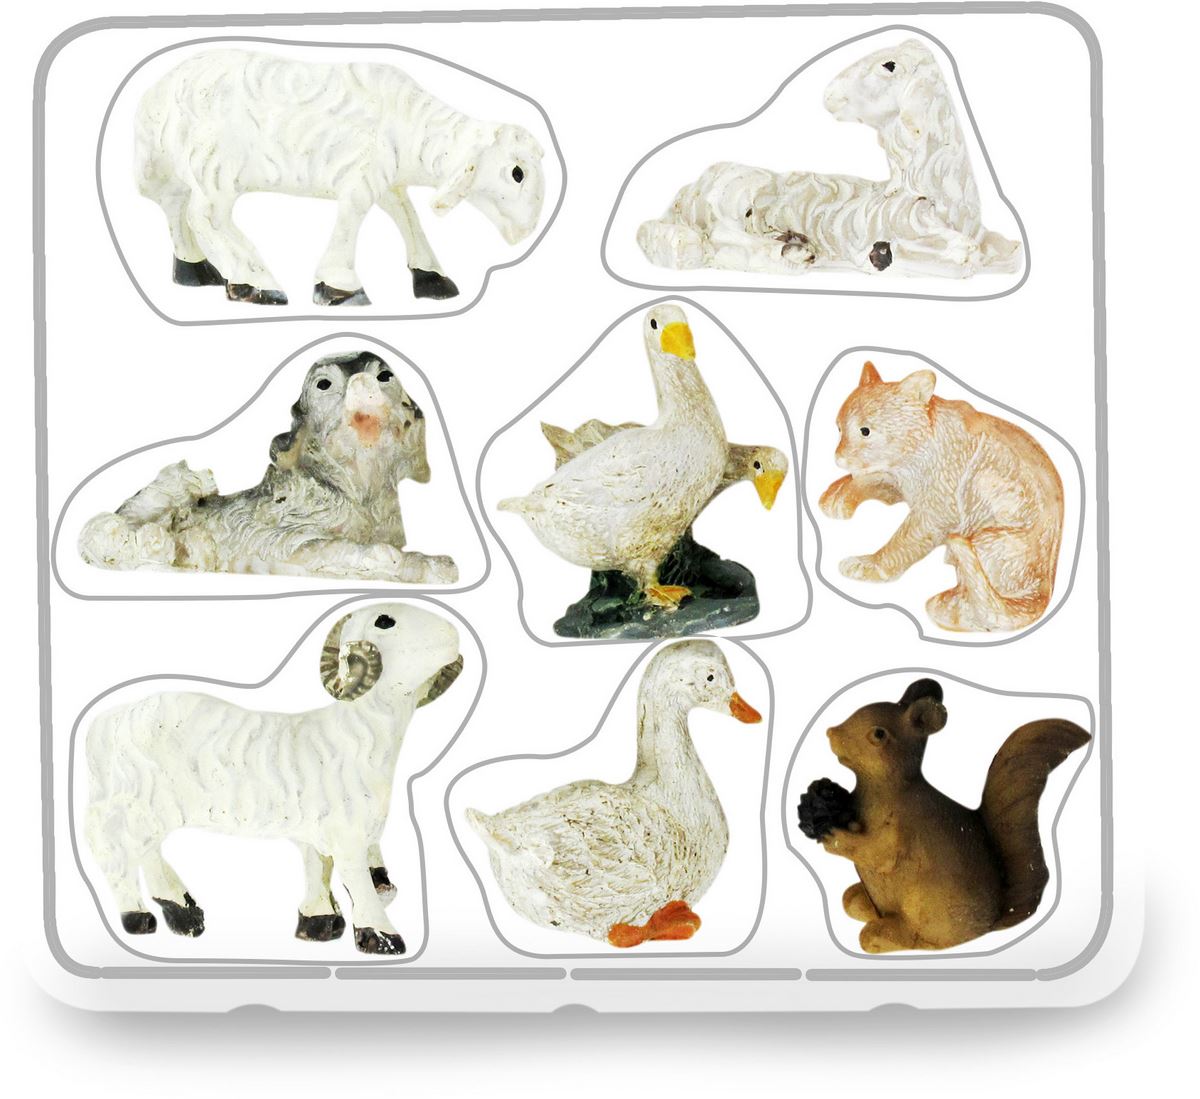 statuine animali presepe: set 8 statuette pecore, cane, oche, gatto, scoiattolo, in resina dipinta a mano (circa 2,5 cm)